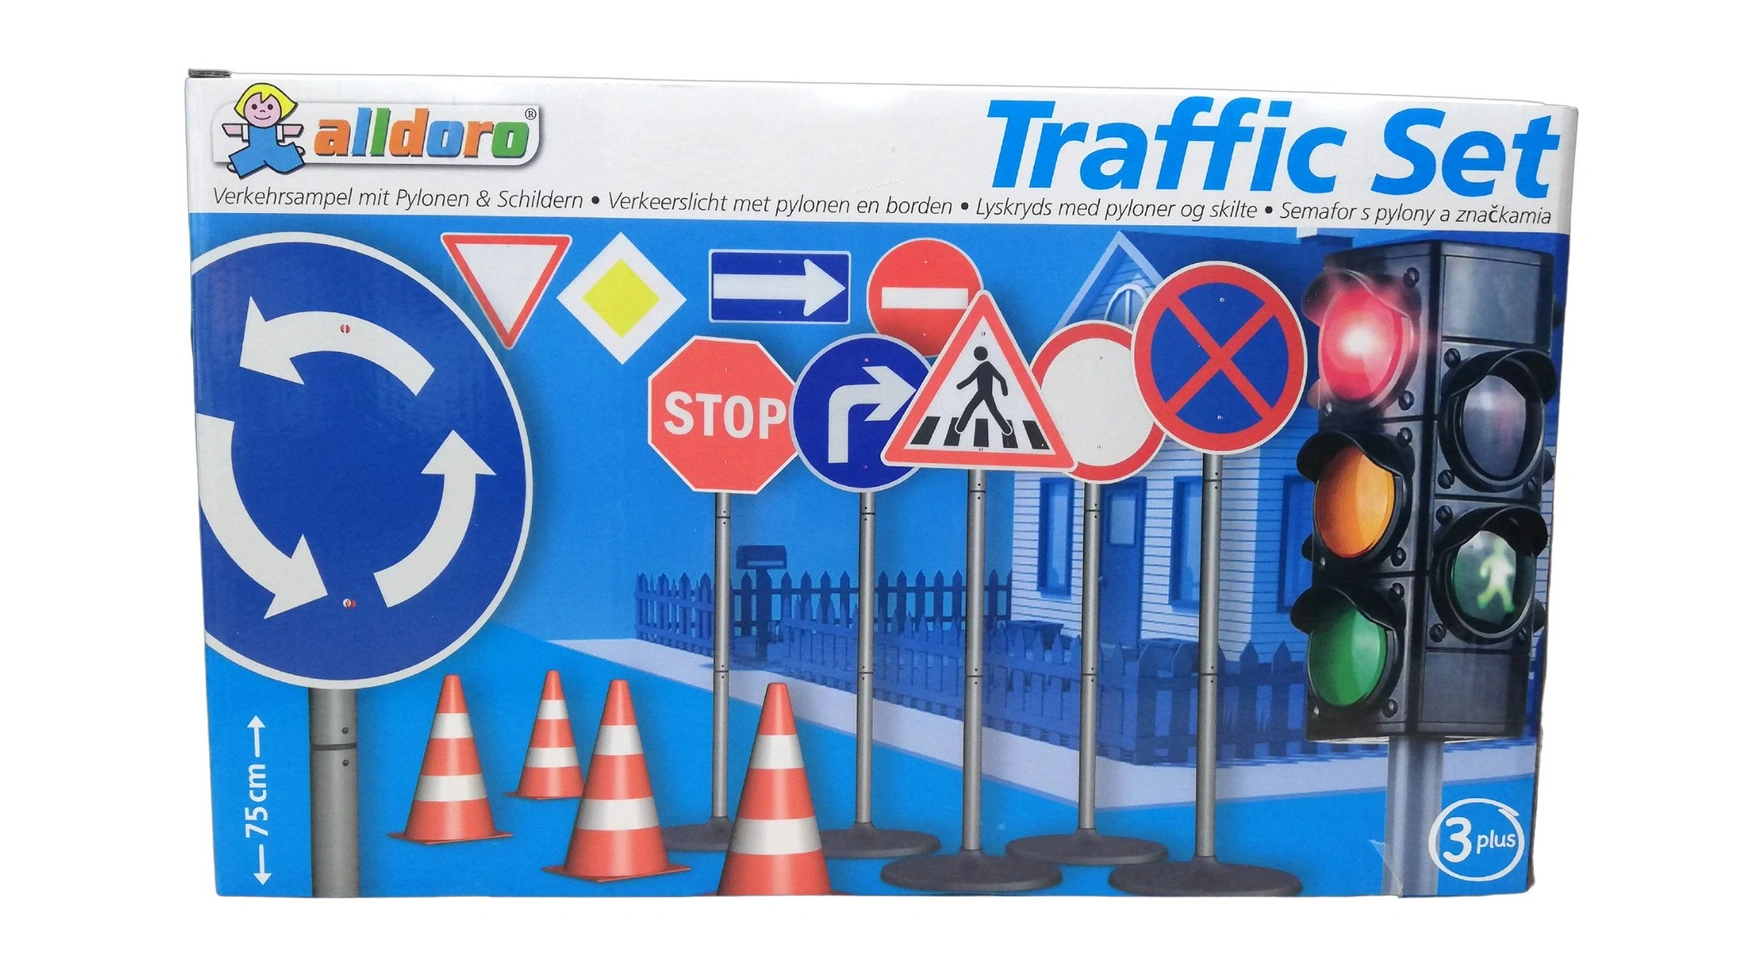 цена Alldoro Дорожный комплект XXL со светофором, дорожными знаками и пилонами